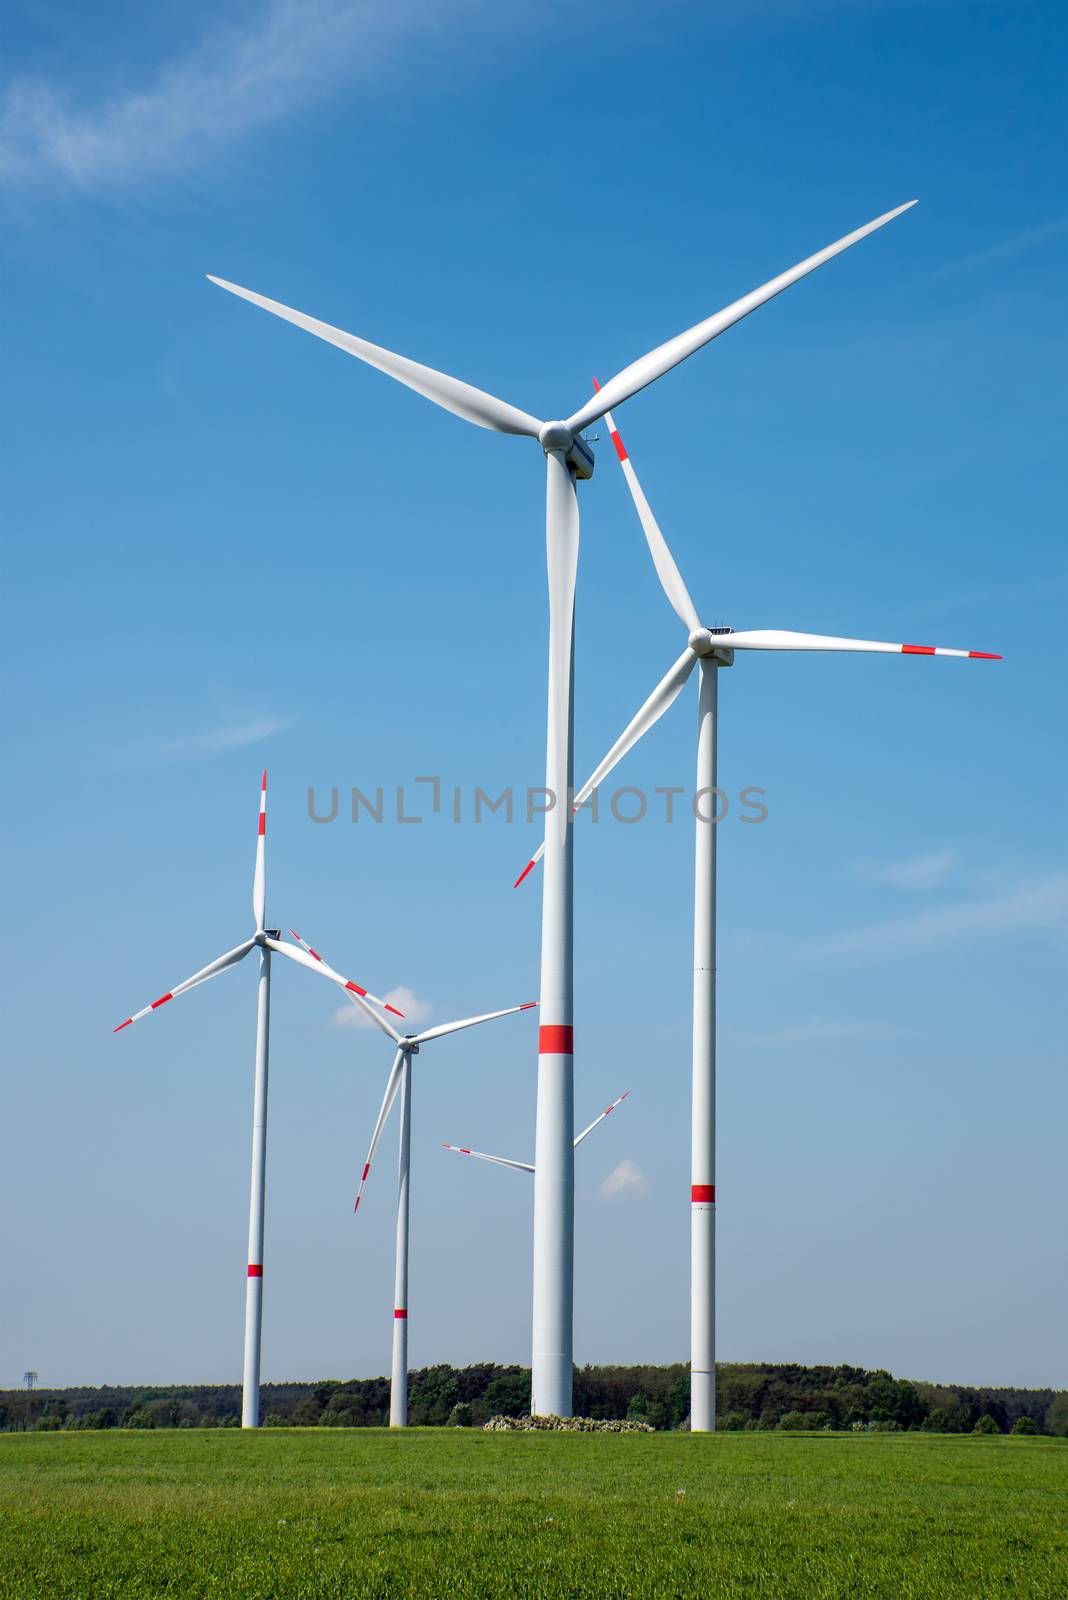 Wind power plants in the fields seen in rural Germany